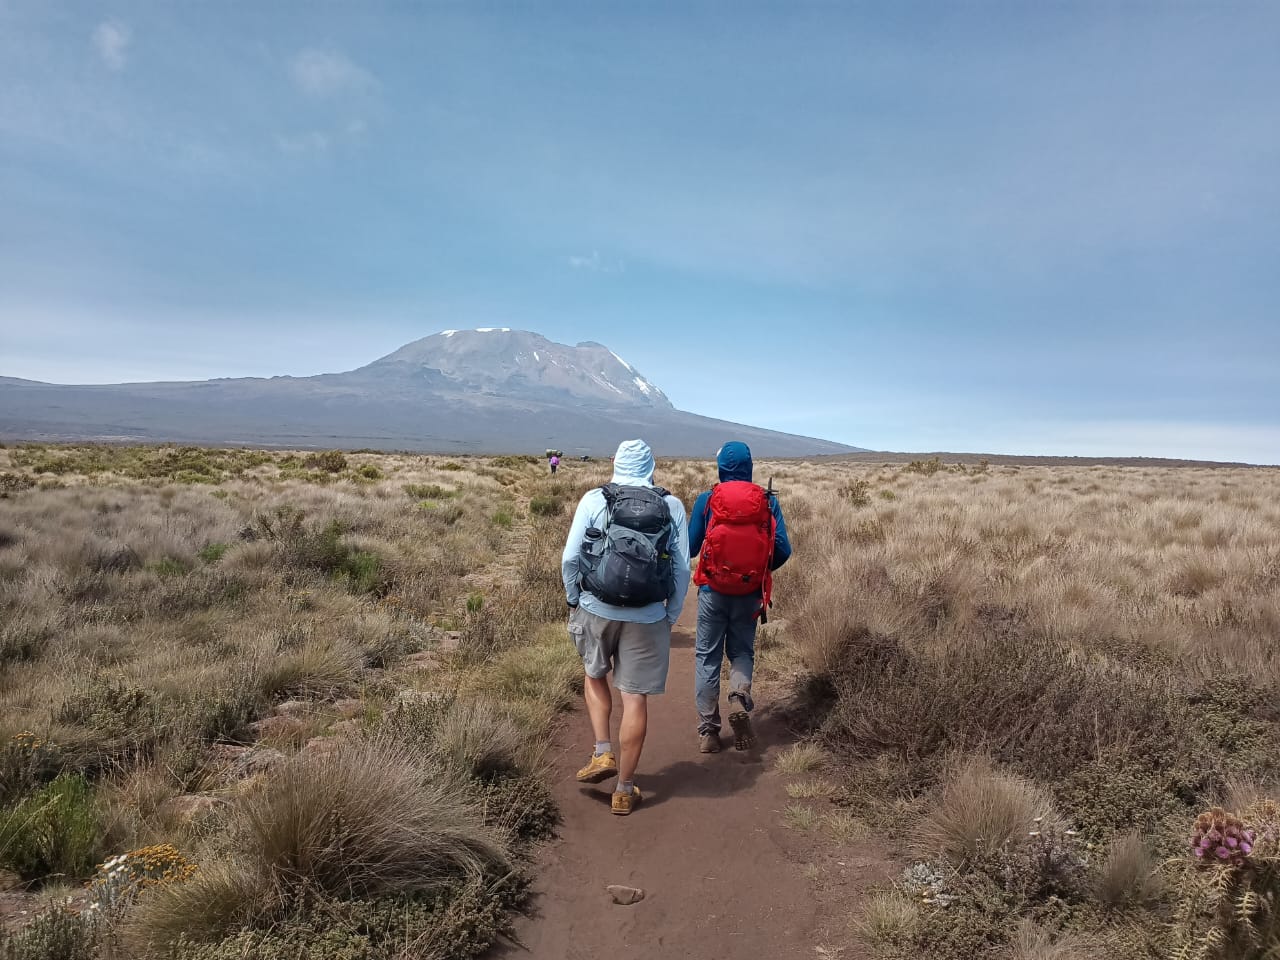 MT. Kilimanjaro - 5 Days Marangu Route(5 Days,4 Nights)